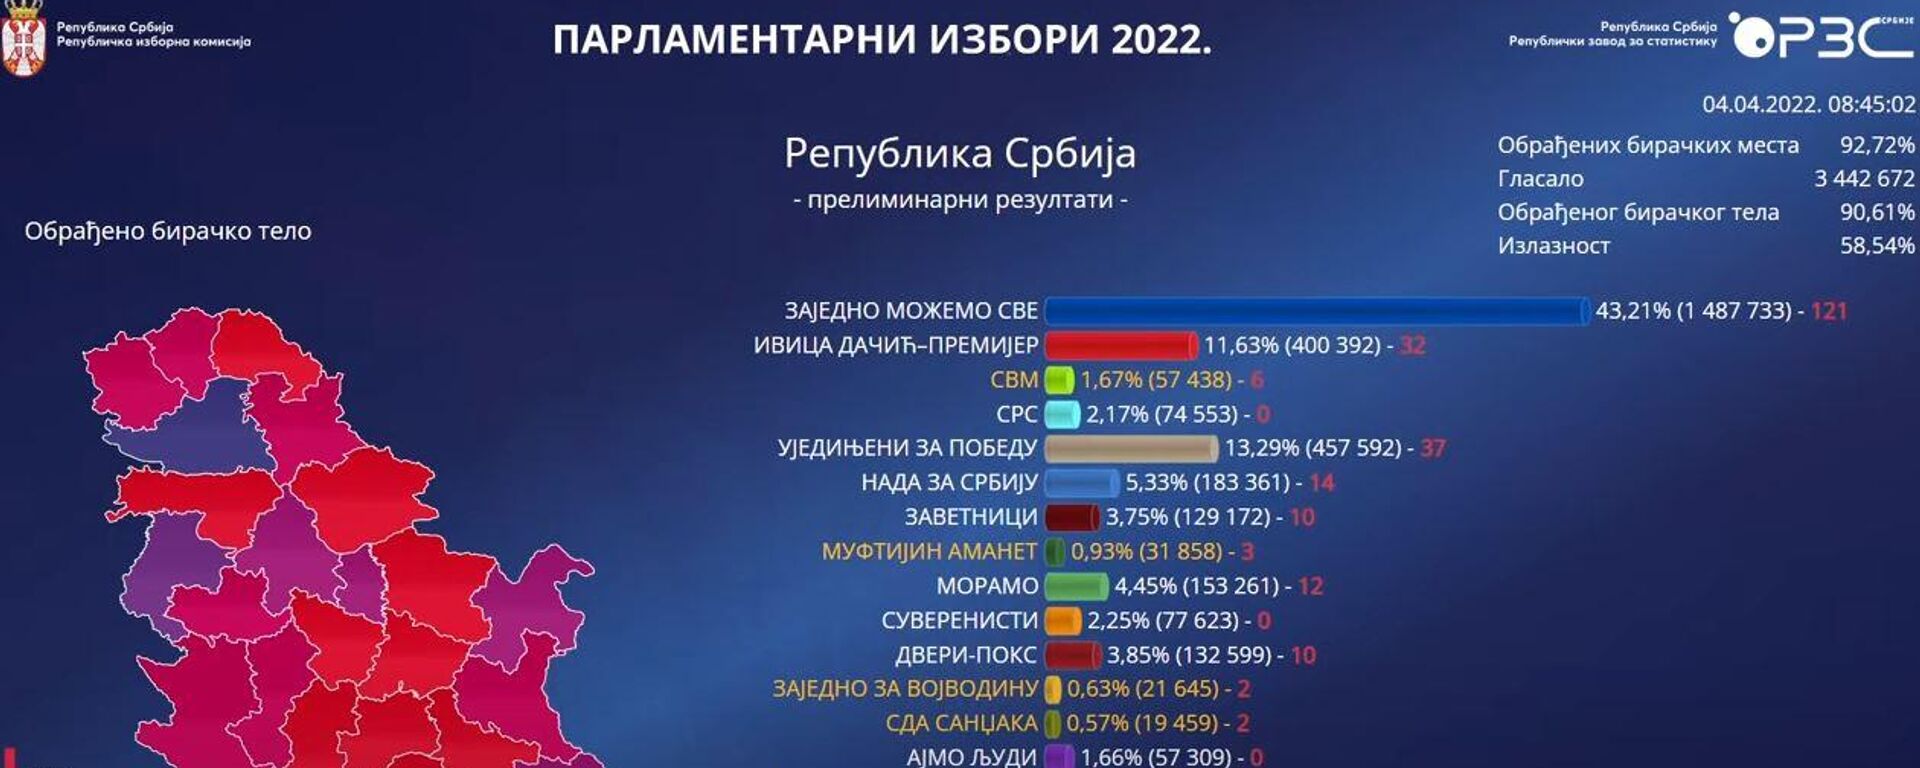 РИК-ова пројекција изборних резултата - Sputnik Србија, 1920, 04.04.2022